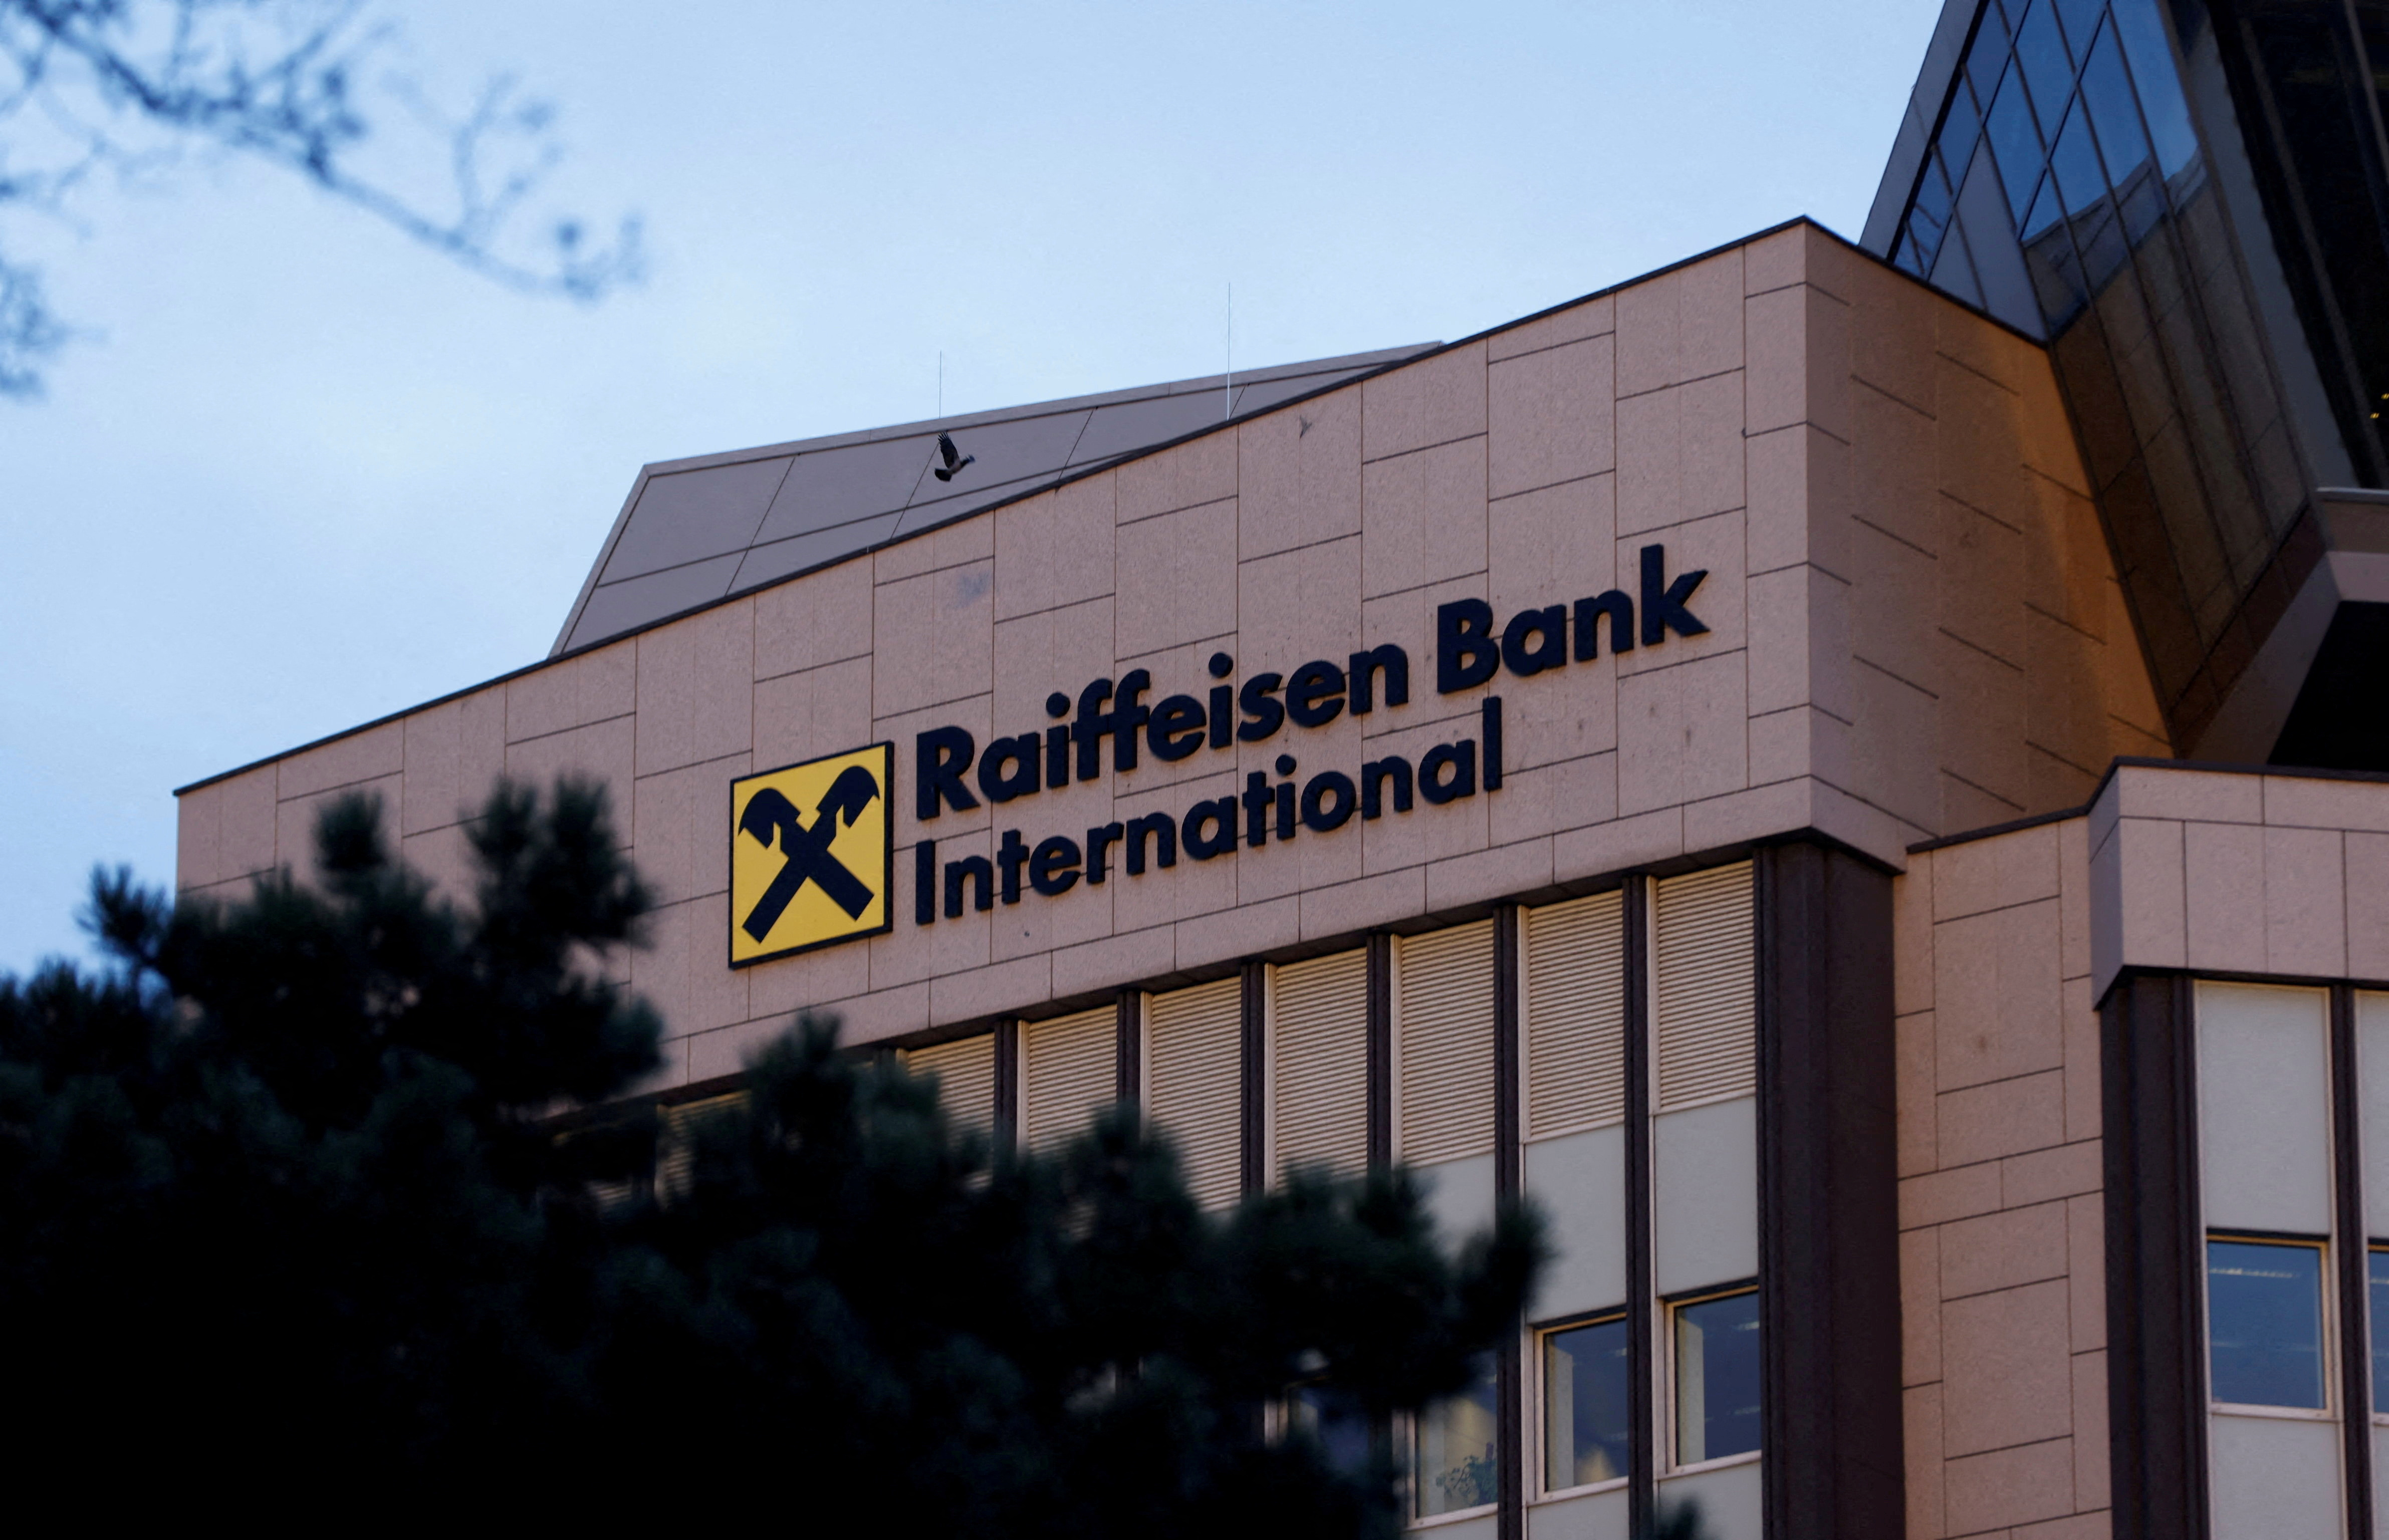 La sede central del Raiffeisen Bank International (RBI) en Viena, que continúa operando y obteniendo enormes ganancias en el mercado ruso a pesar de las sanciones de la UE. (REUTERS/Leonhard Foeger)